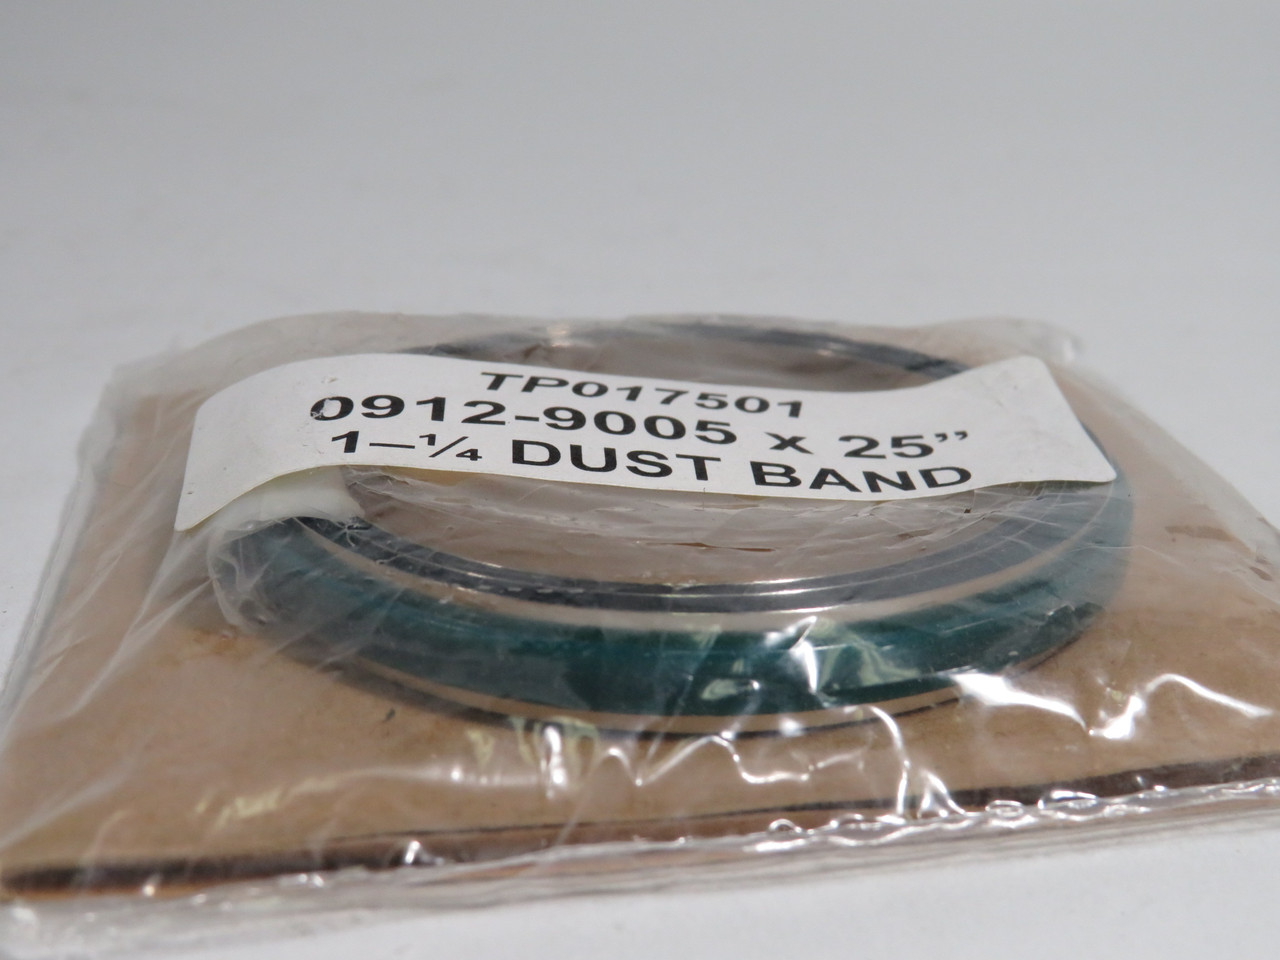 Generic TP017501 Dust Band 1-1/4" 0912-9005 x 25" NWB